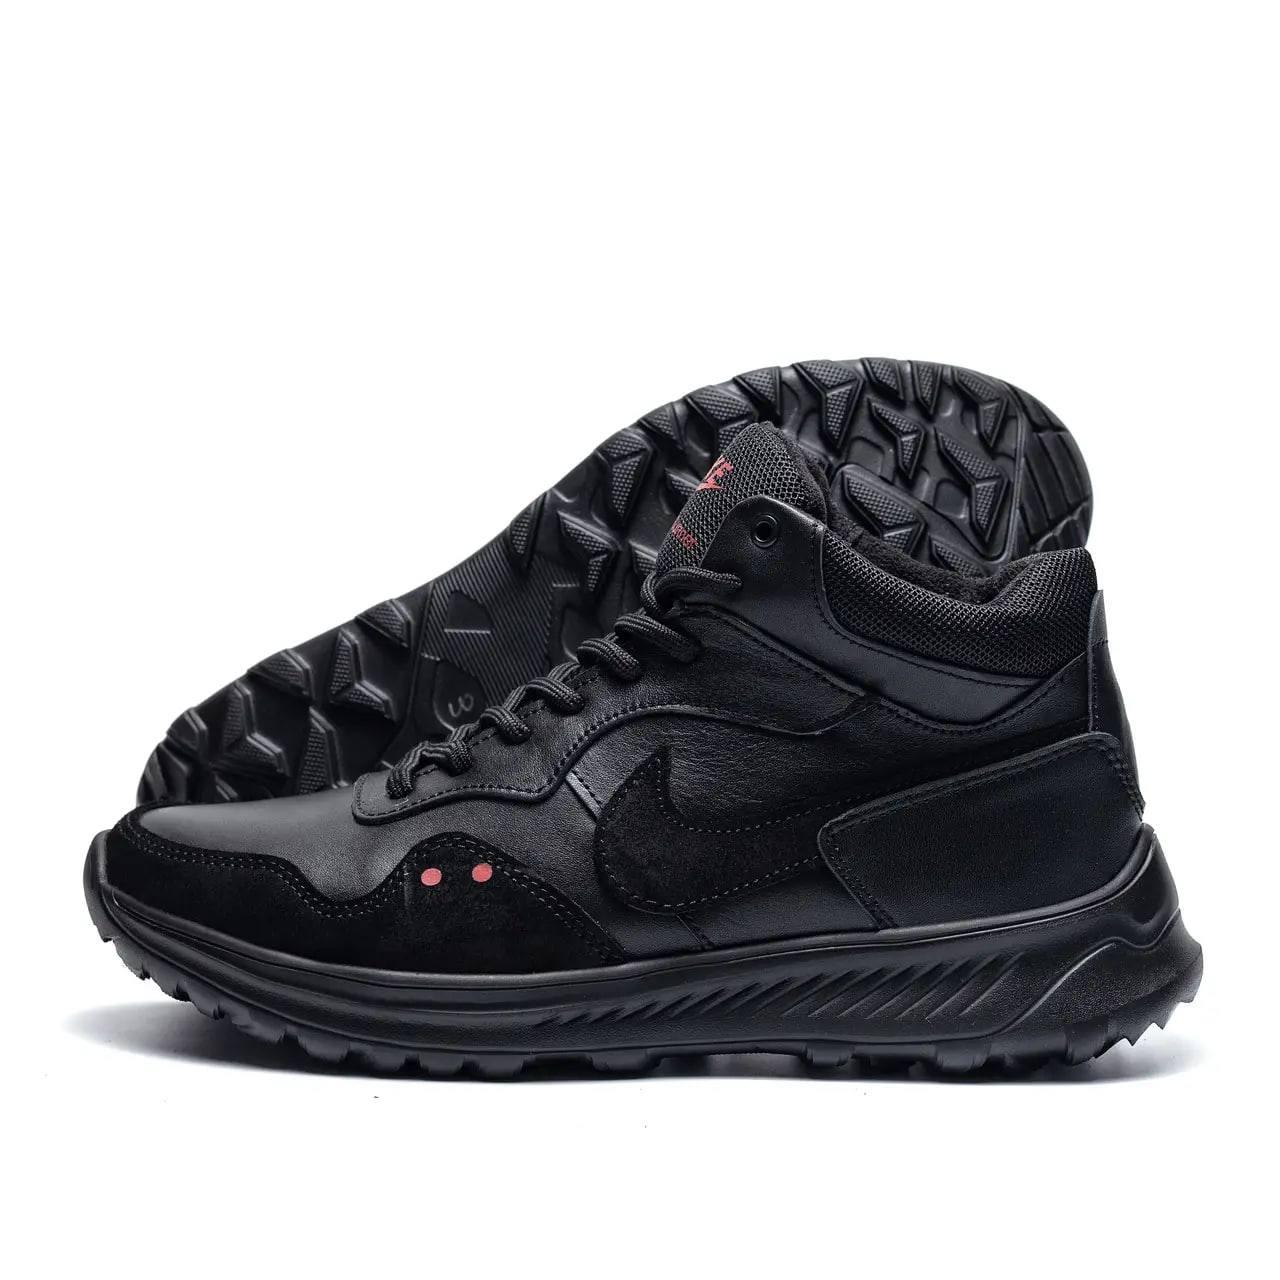 Чоловічі зимові високі кросівки Nike Venture Runner, чоловічі утеплені кросівки на хутрі, чоловіче взуття зима